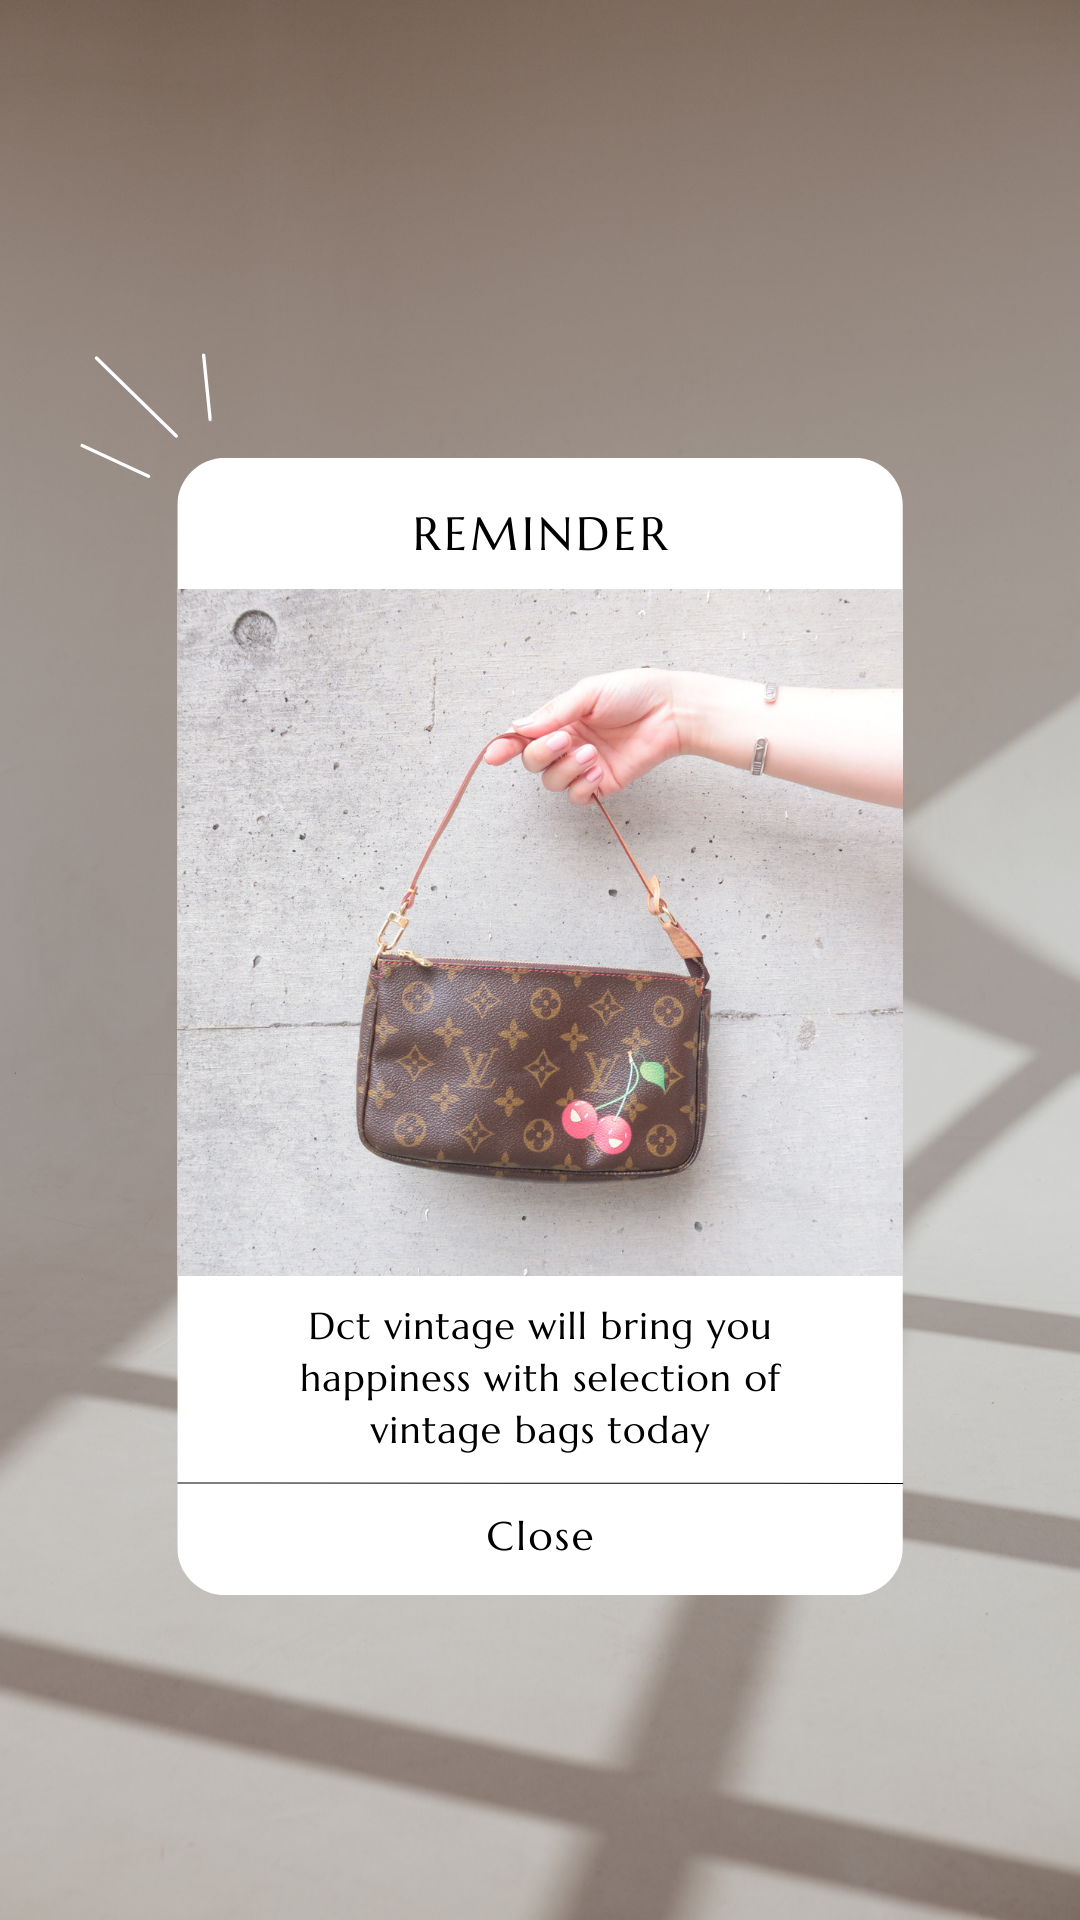 Louis Vuitton Croissant Handbag - clothing & accessories - by owner -  apparel sale - craigslist